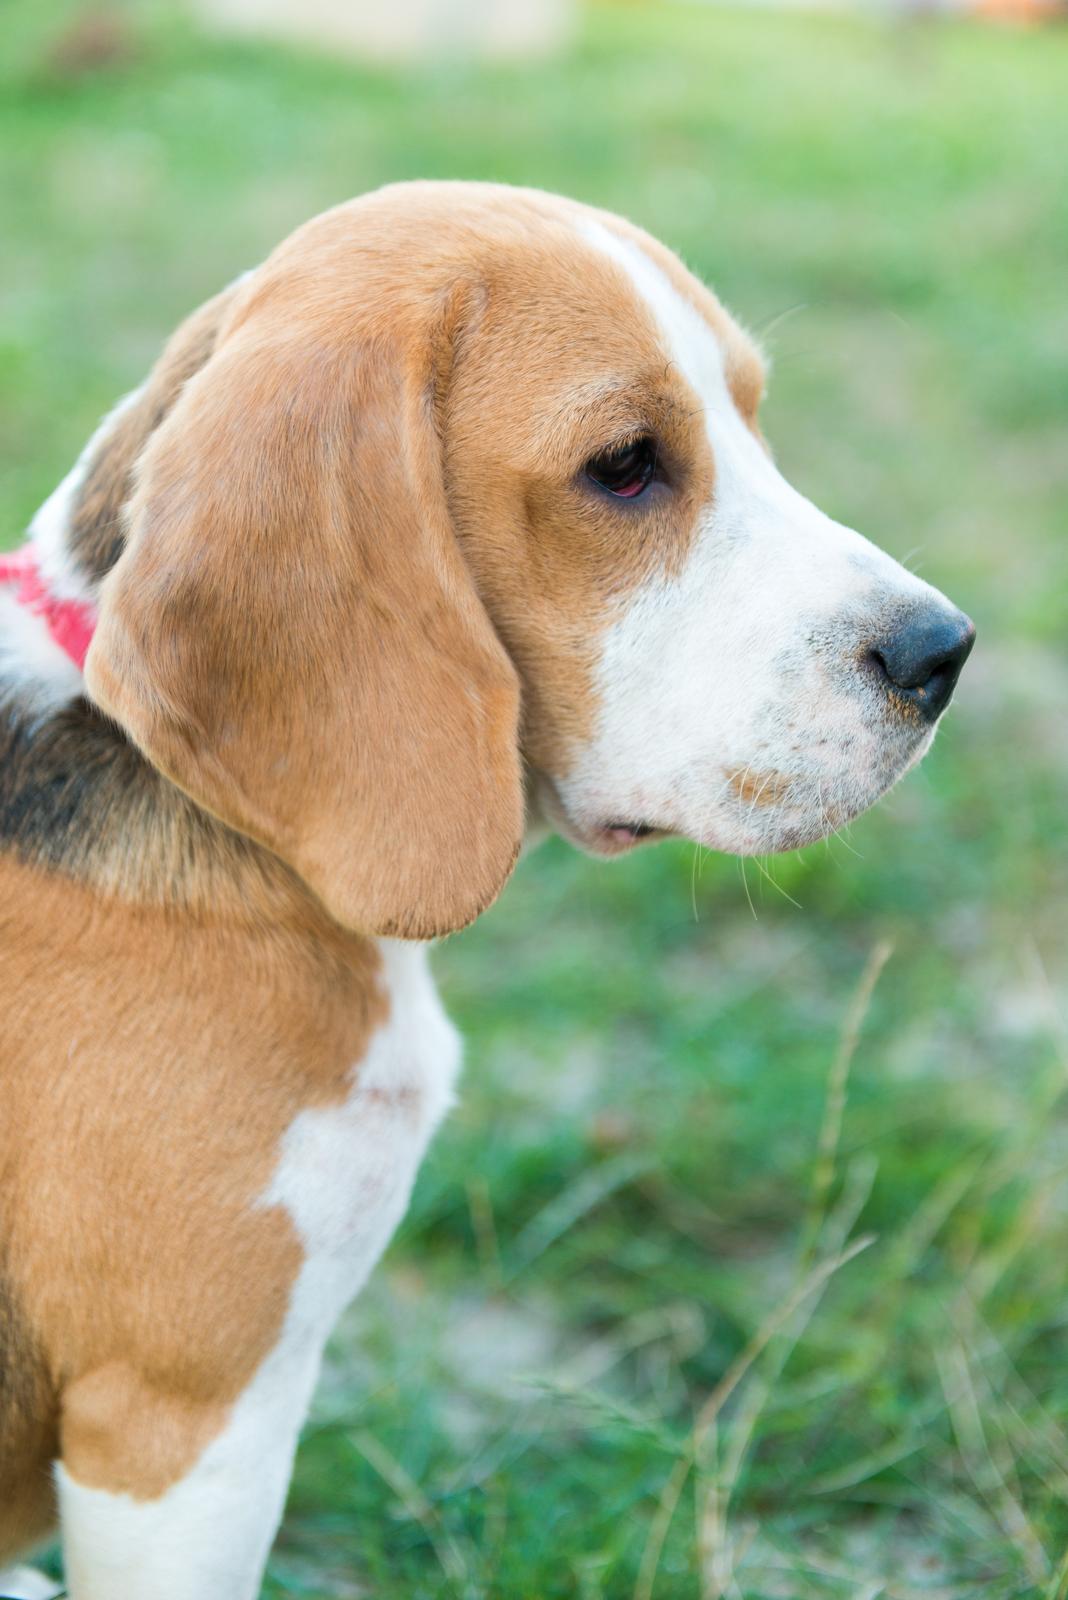 Pies rasy Beagle - wybór obroży